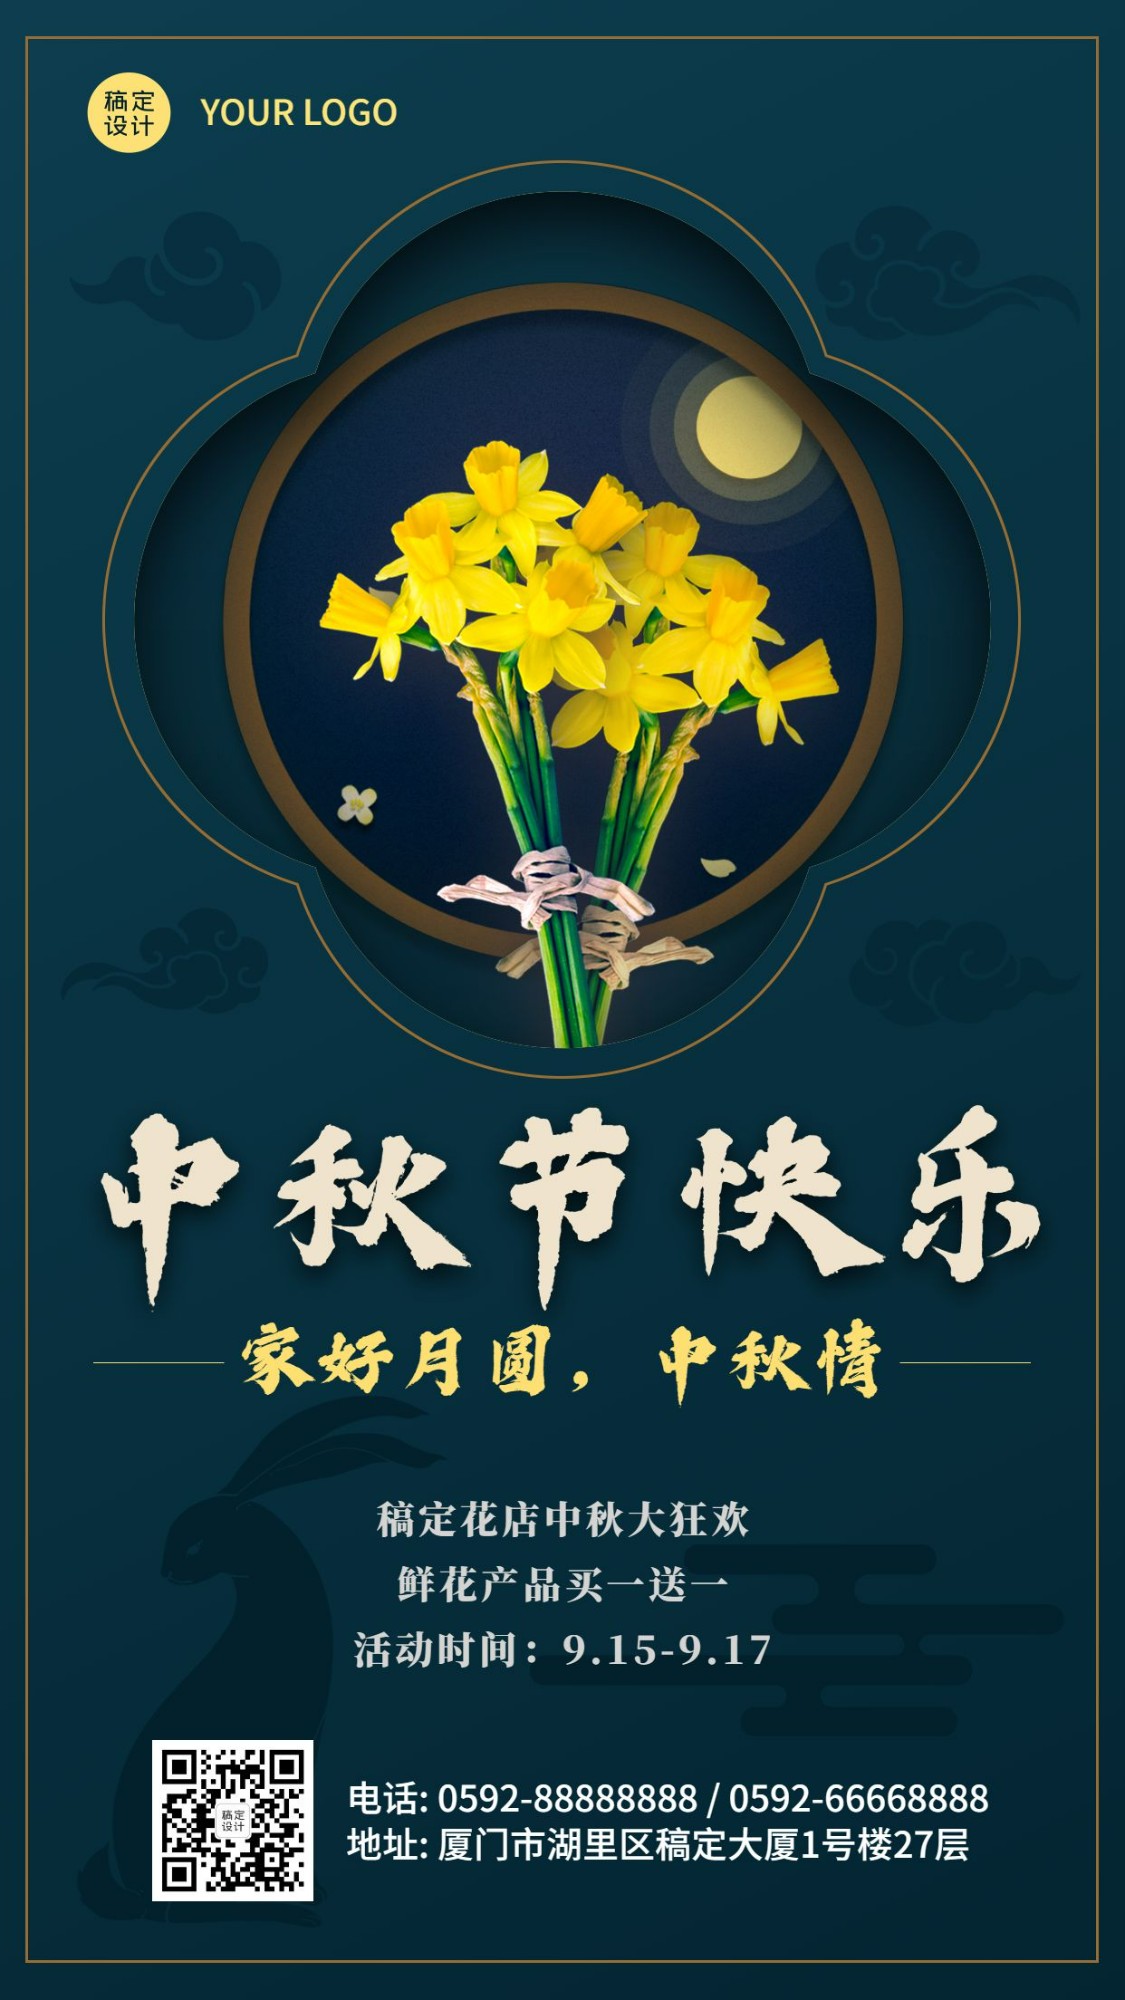 中秋节鲜花产品展示促销手机海报预览效果